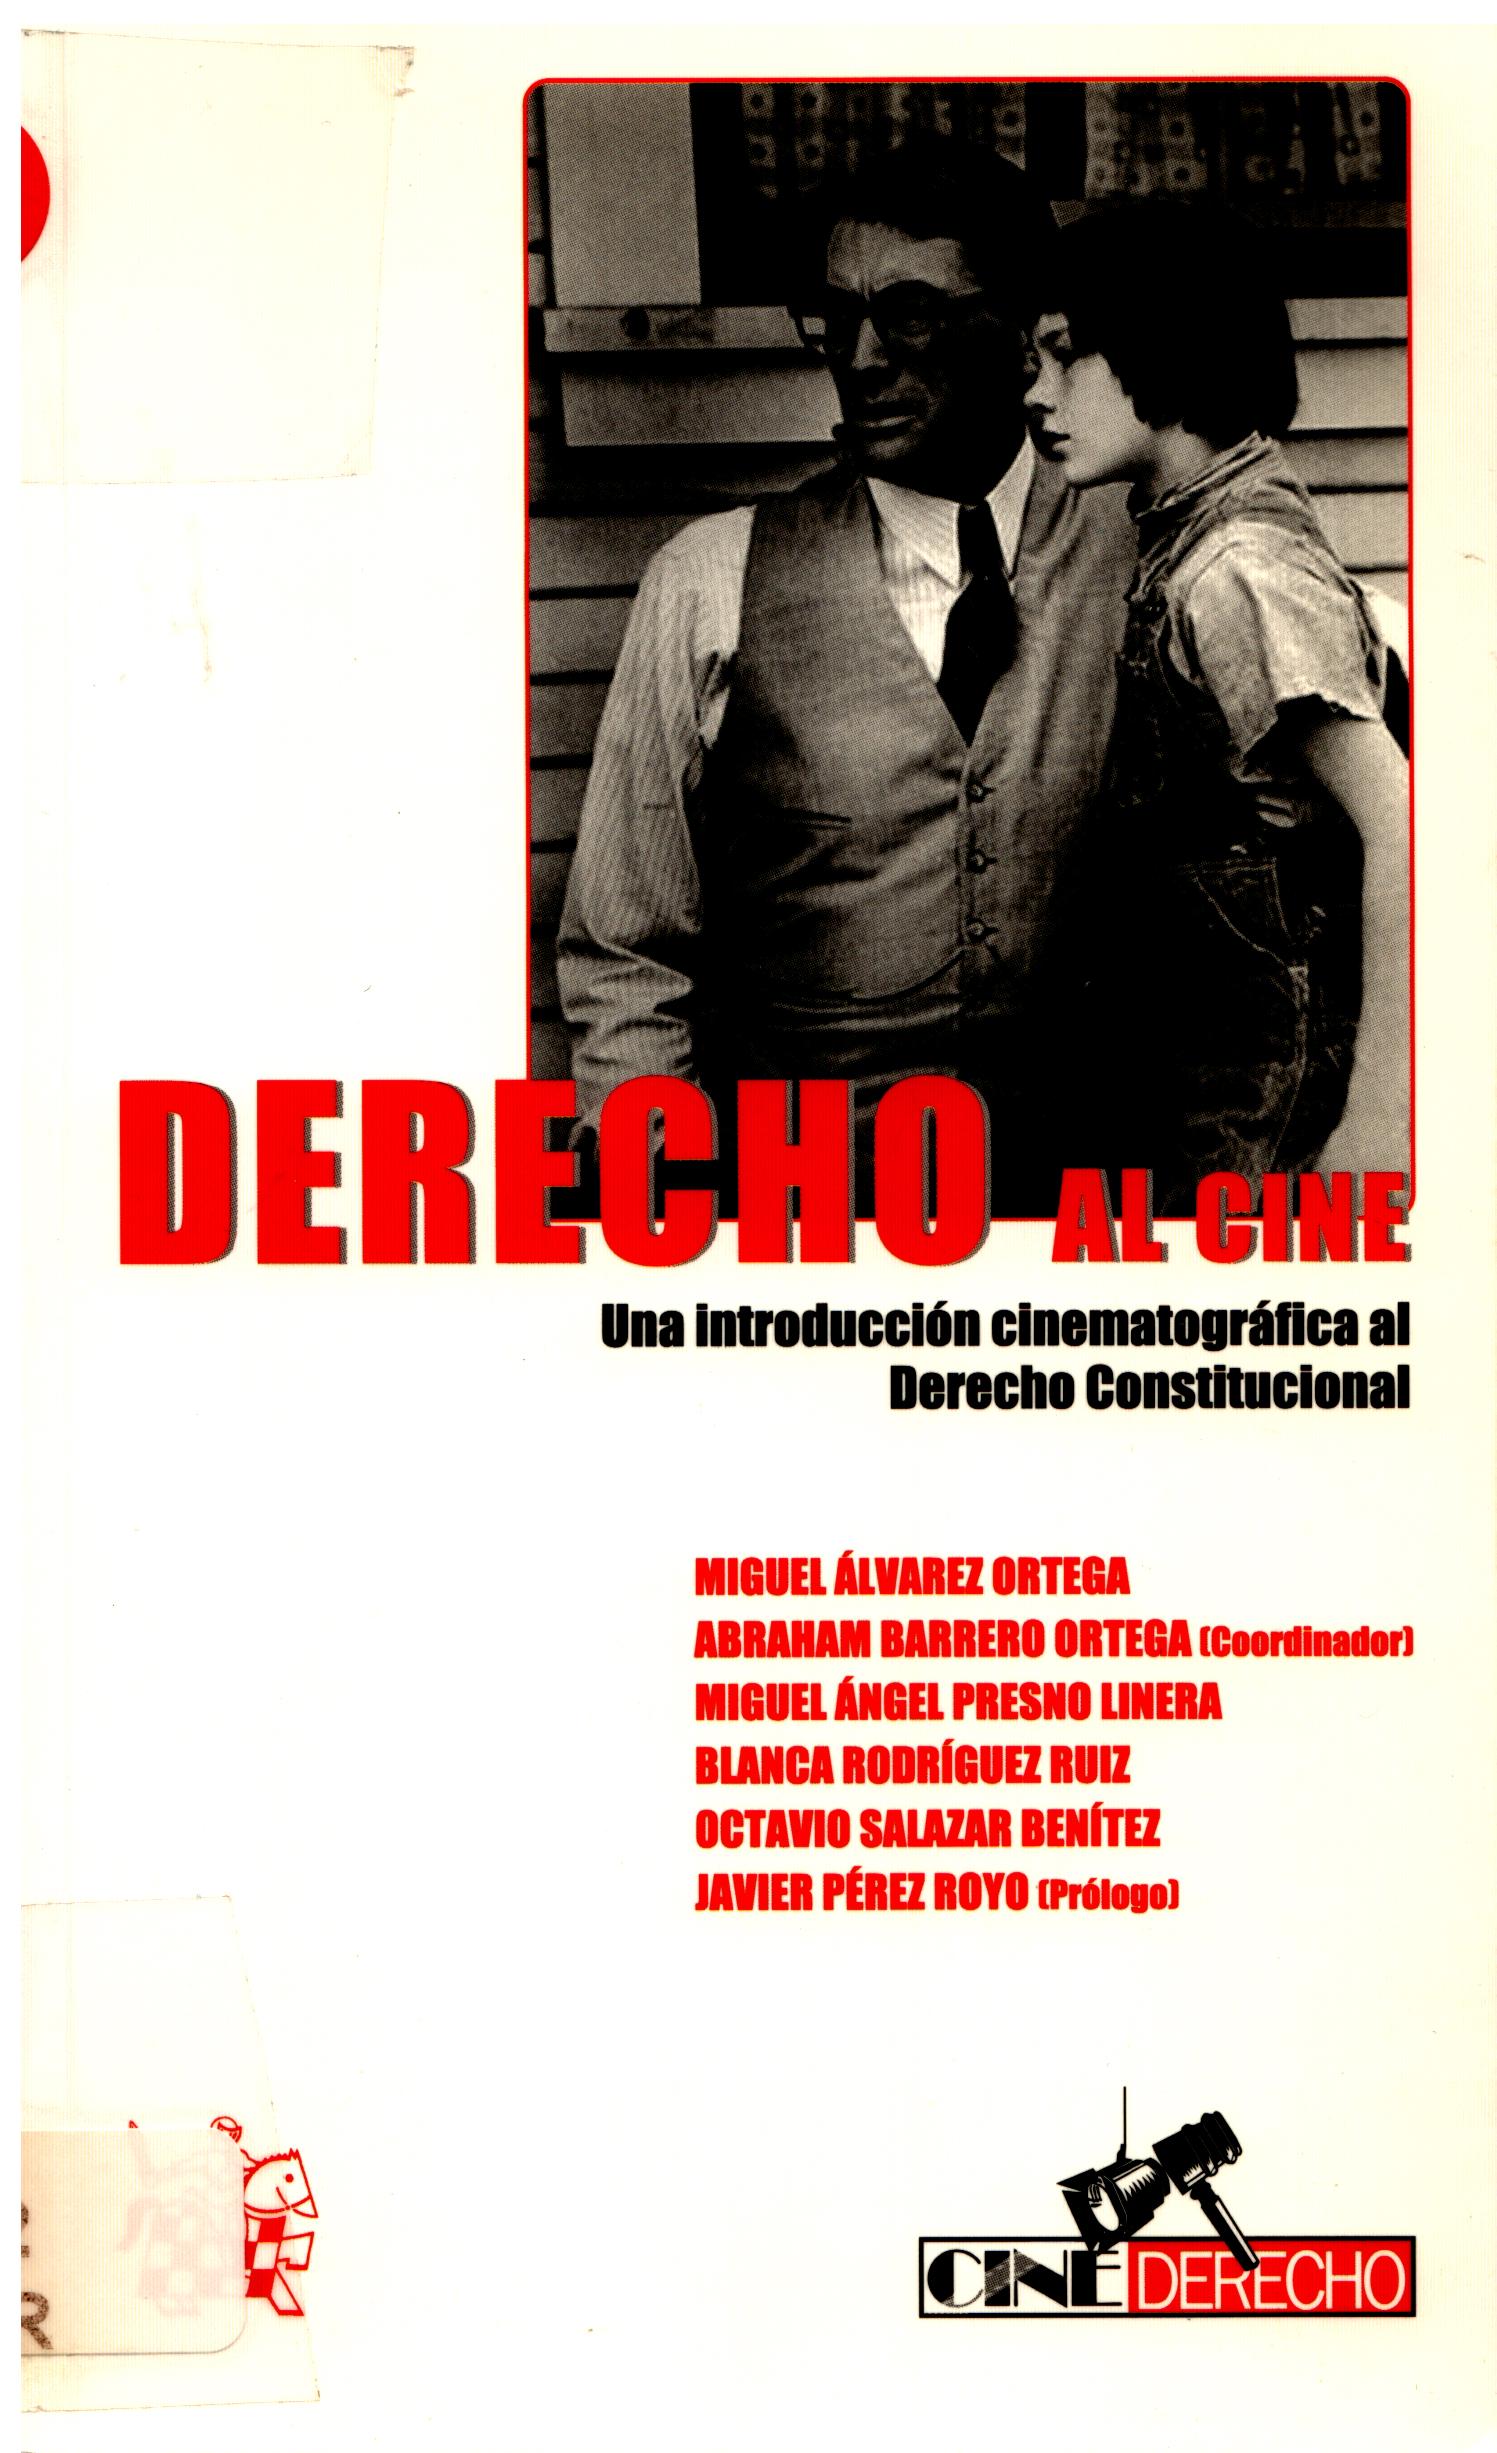 Imagen de portada del libro Derecho al cine